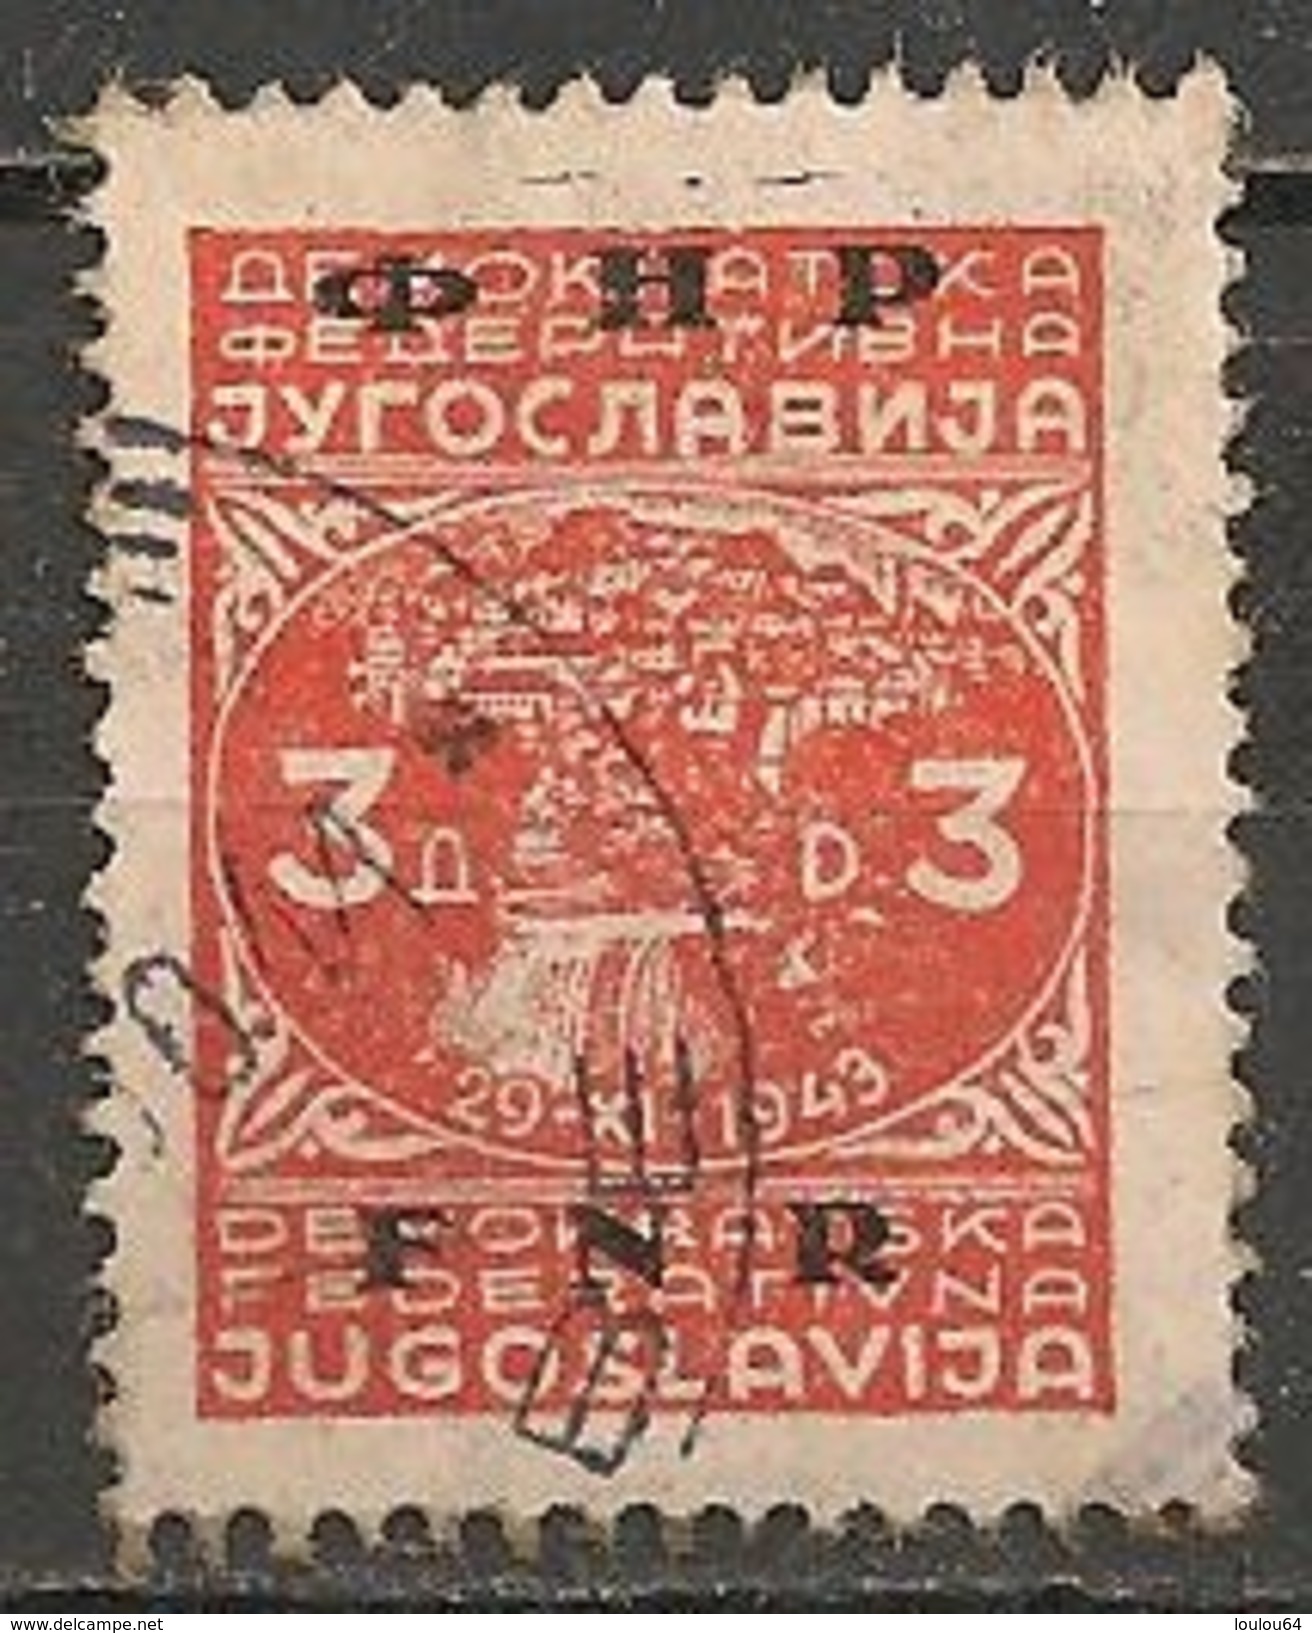 Timbres - Yougoslavie - 1949 - 3 D - N° 535 - - Oblitérés